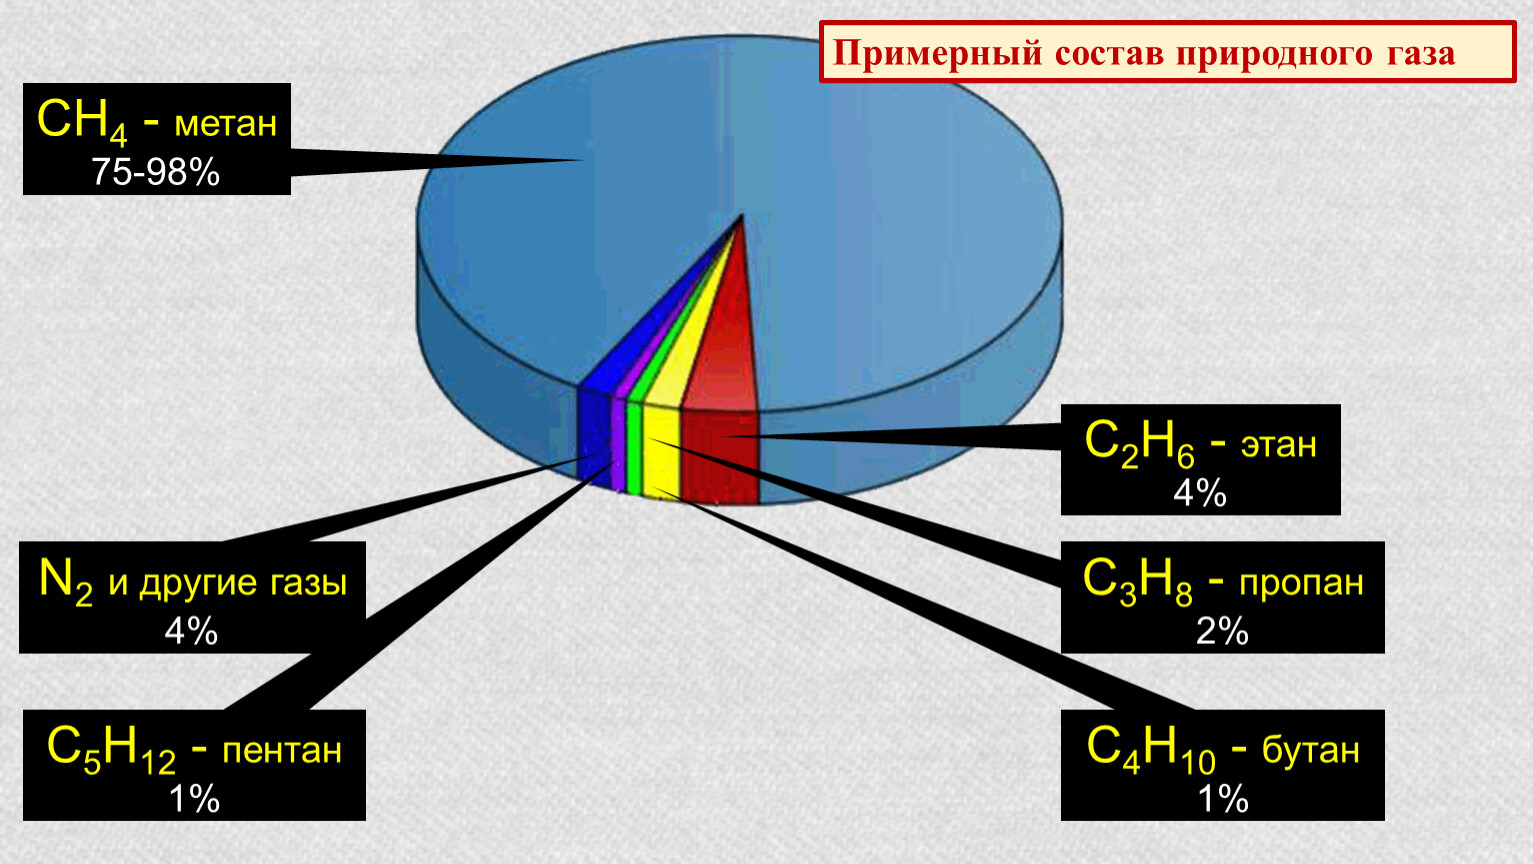 Природные источники метана. Природный ГАЗ хим состав. Химический состав природного газа диаграмма. Примерный химический состав природного газа. Состав метана газа природный ГАЗ.